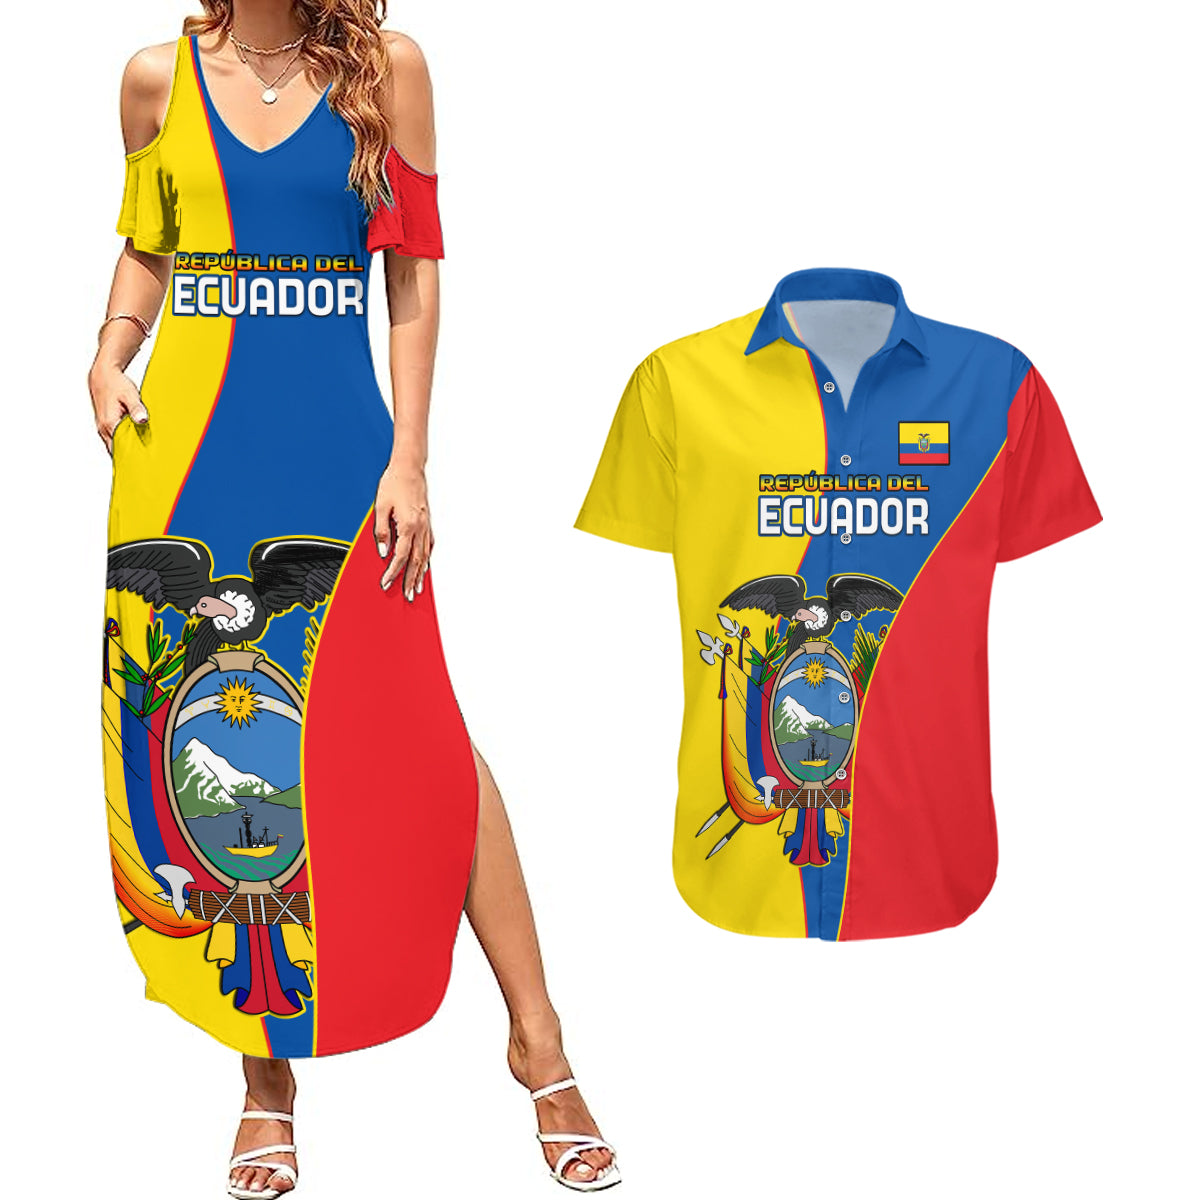 ecuador-couples-matching-summer-maxi-dress-and-hawaiian-shirt-ecuadorian-independence-day-10-august-proud